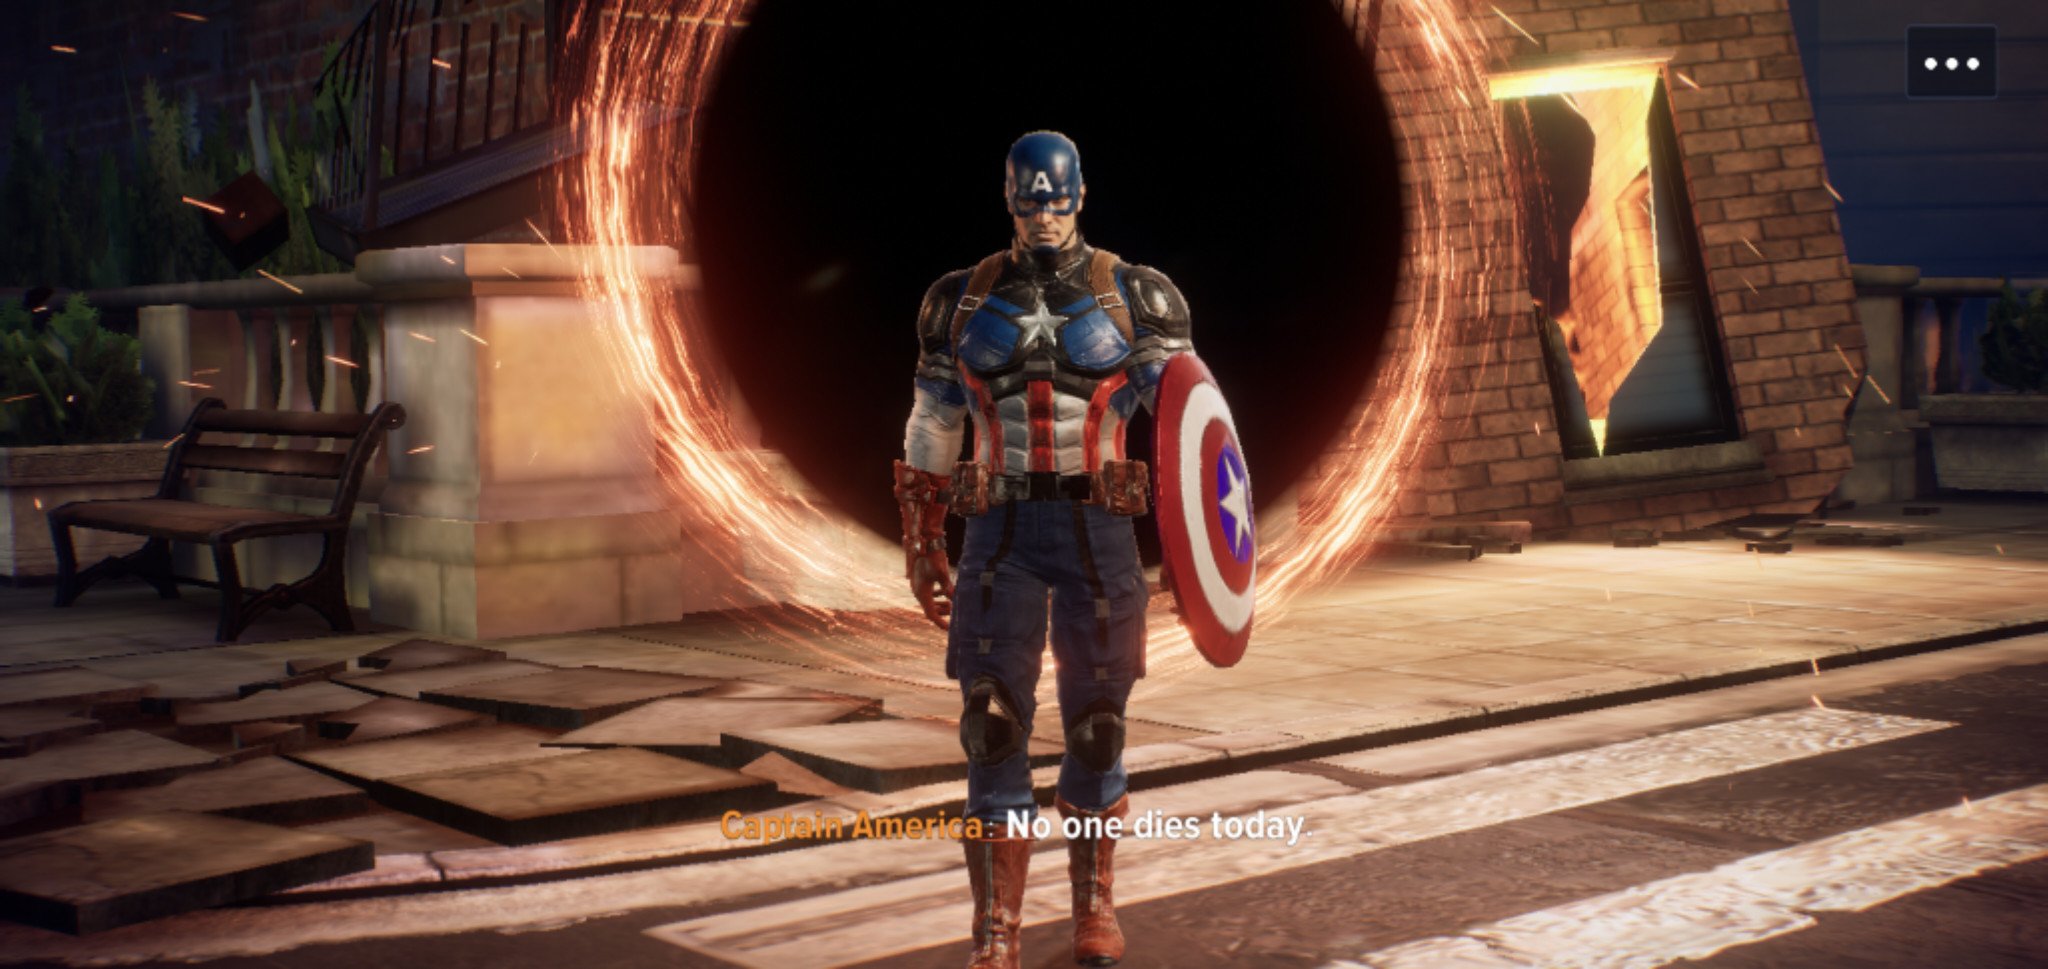 Mfr Captain America